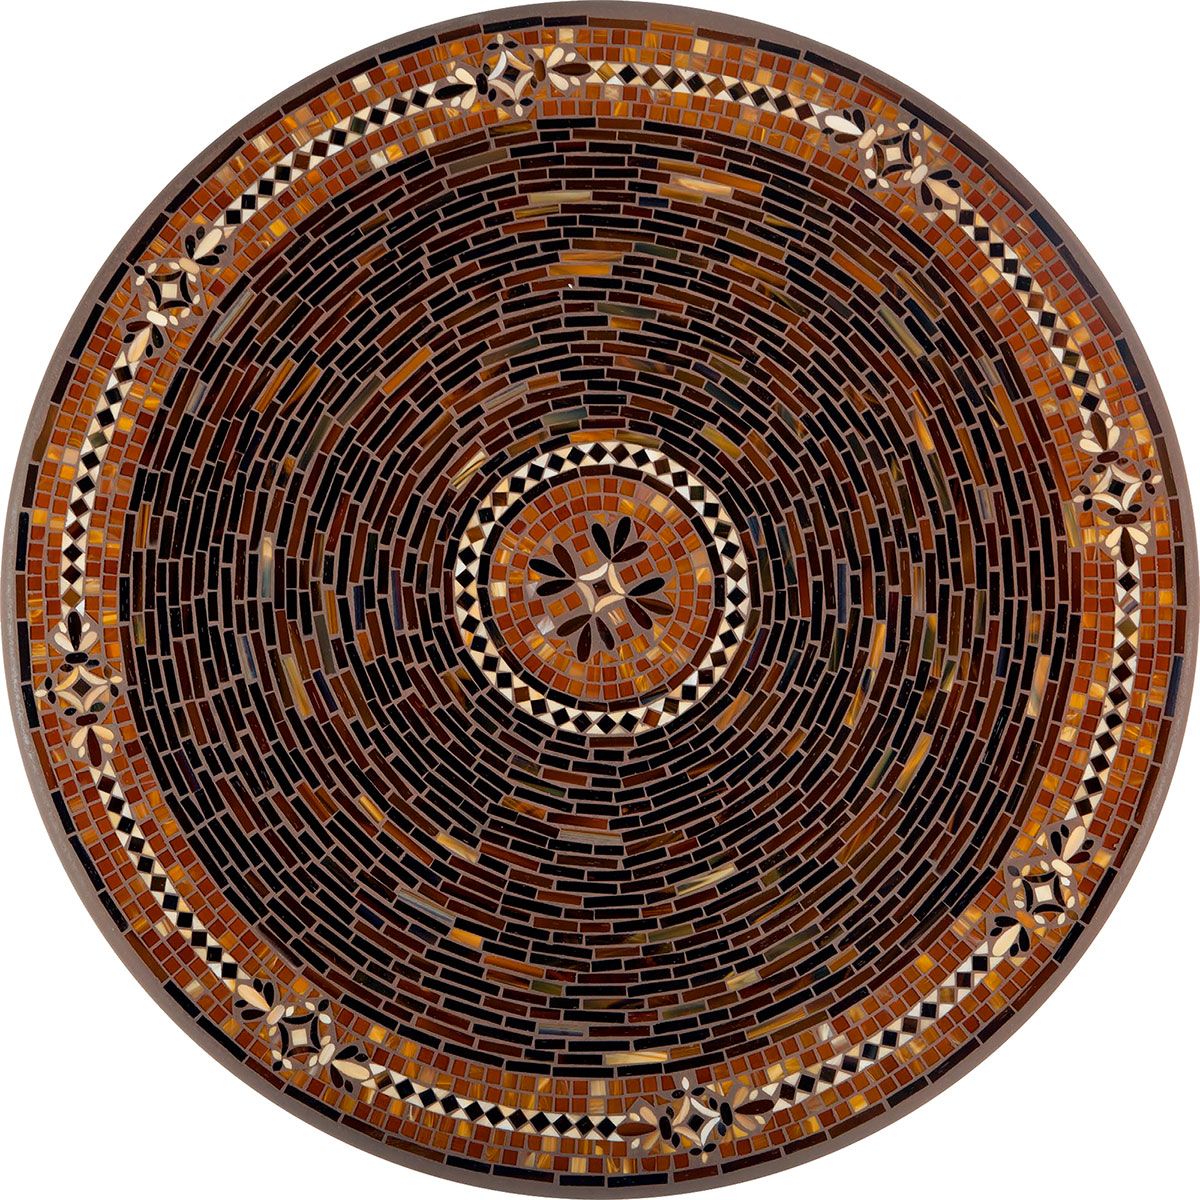 Mahogany Atlas Mosaic Table Tops-Iron Accents